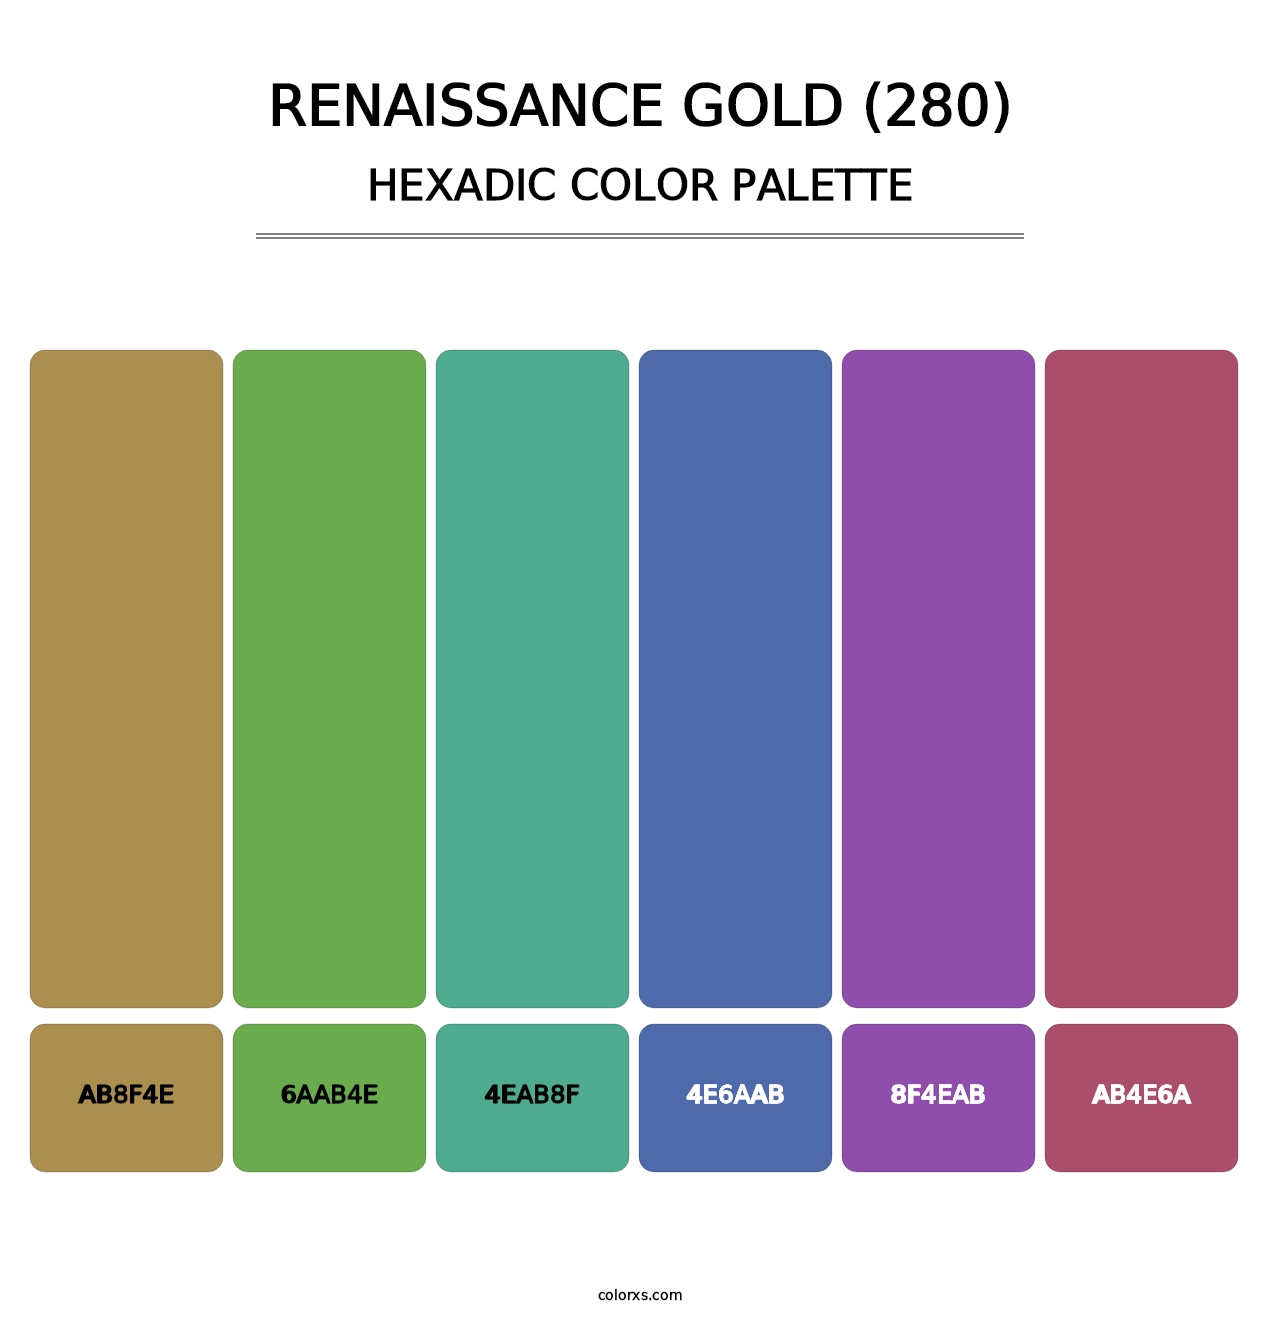 Renaissance Gold (280) - Hexadic Color Palette